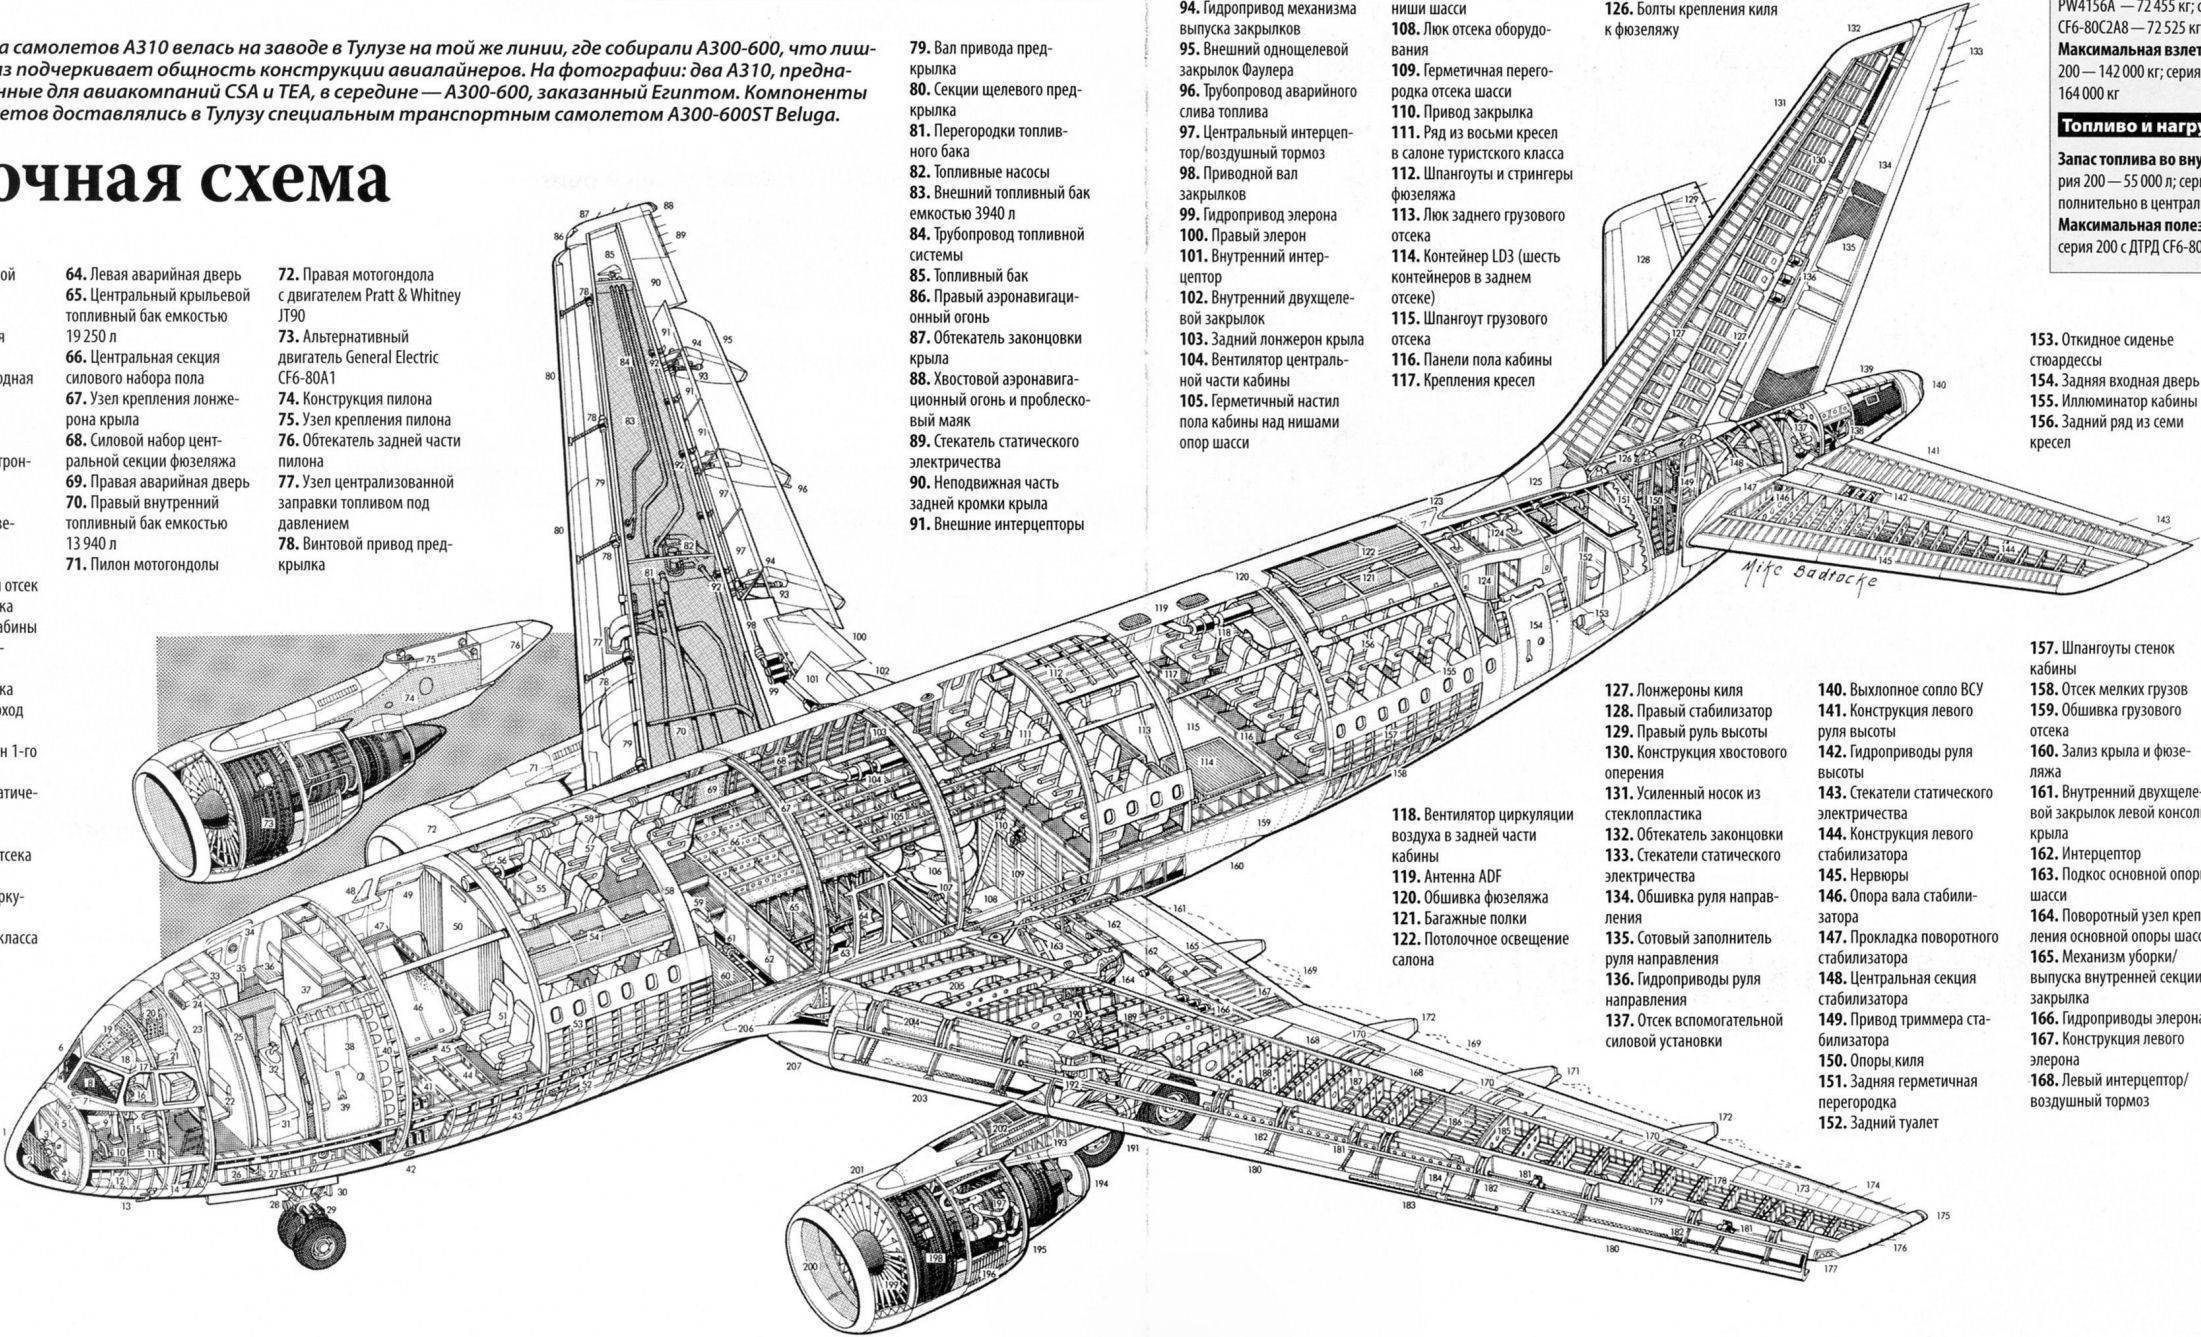 Airbus a340: характеристики, схема салона, лучшие места и фото